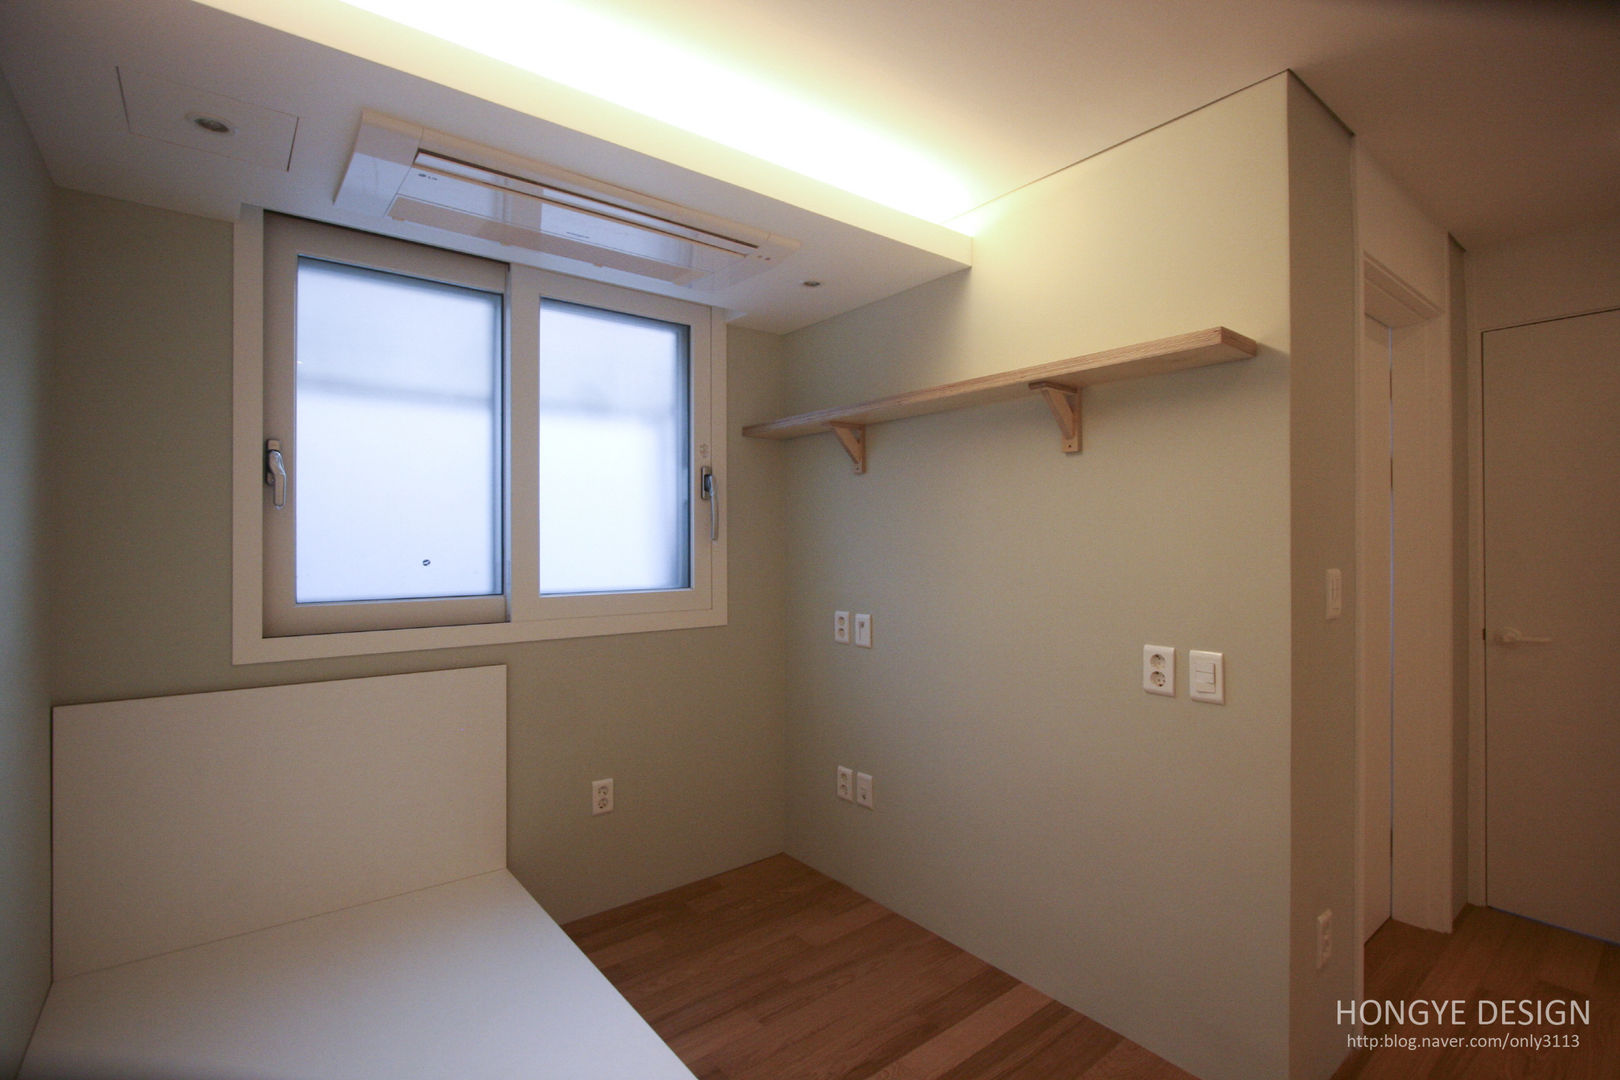 방안에 숨은책방, 작지만 효율적인 주택인테리어_26py, 홍예디자인 홍예디자인 غرفة نوم